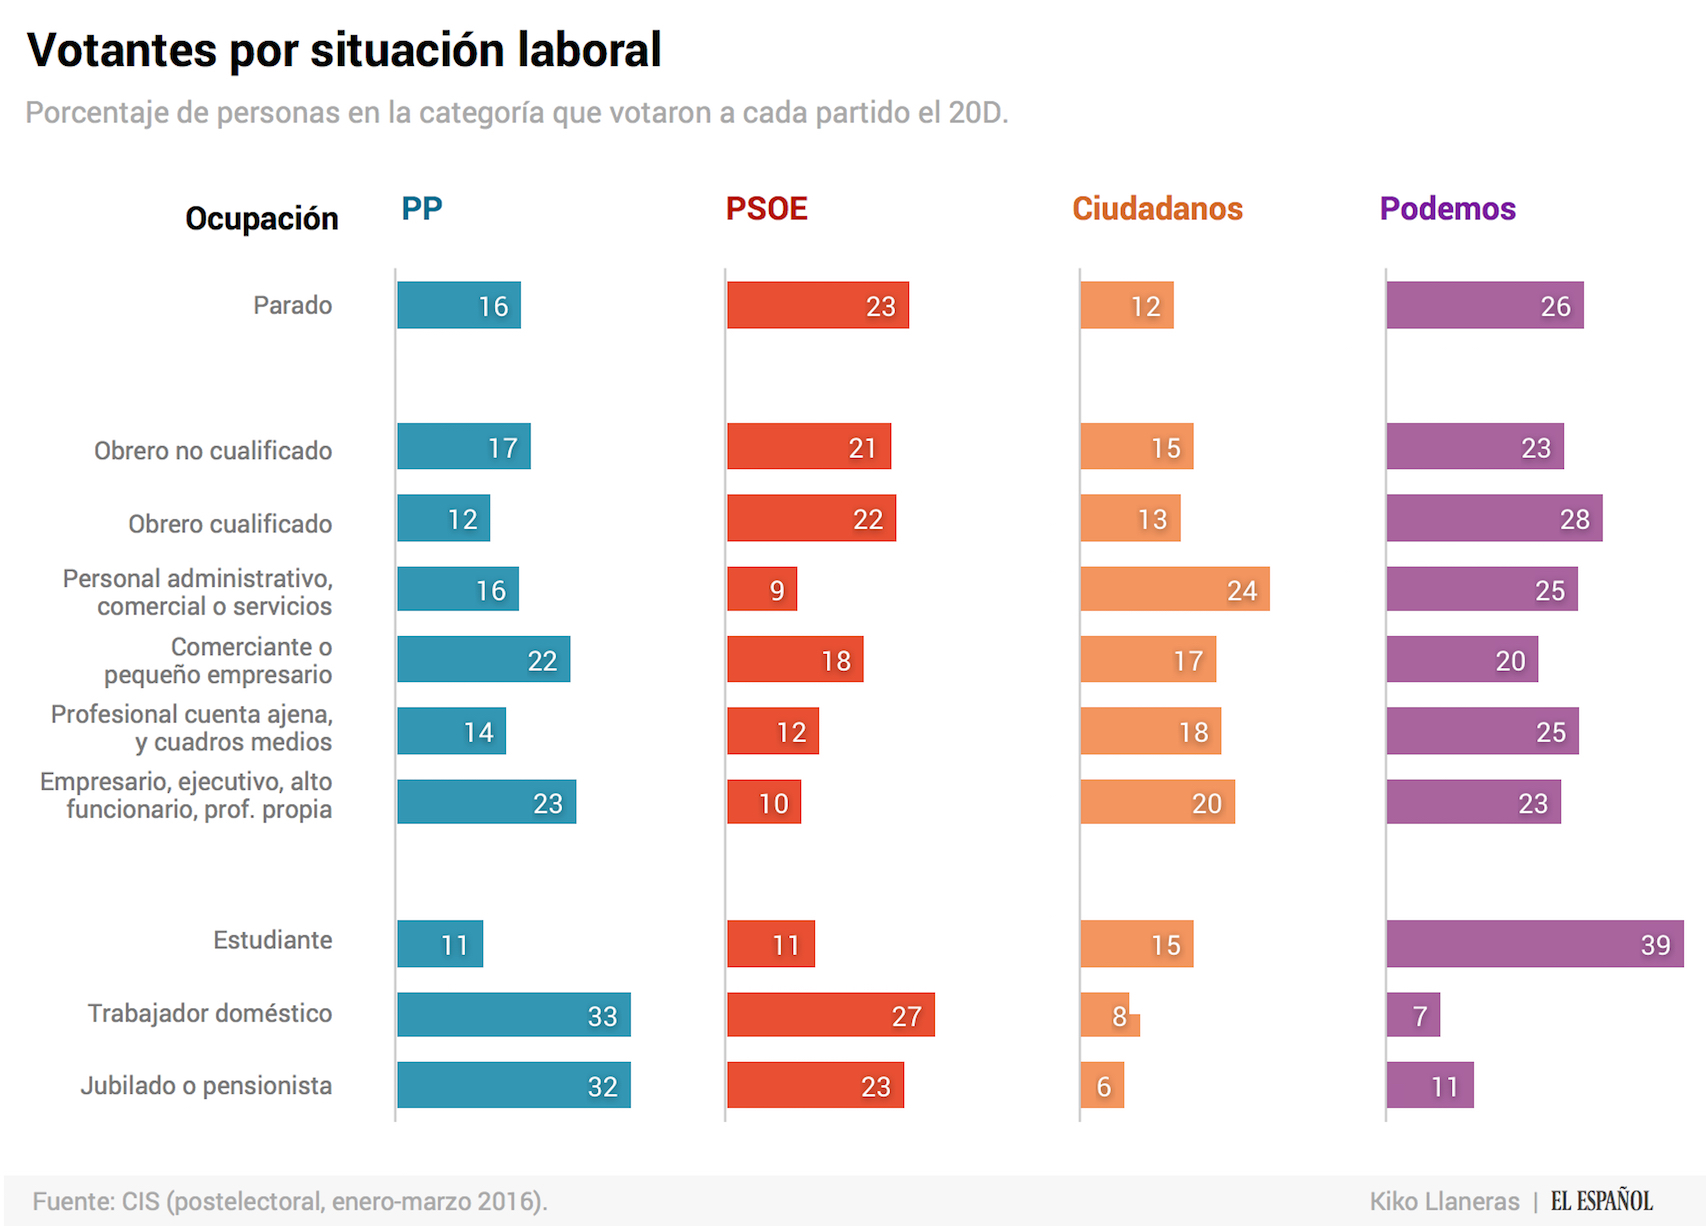 Se filtra una encuesta a pie de urna. Gana PP, seguido de Podemos.